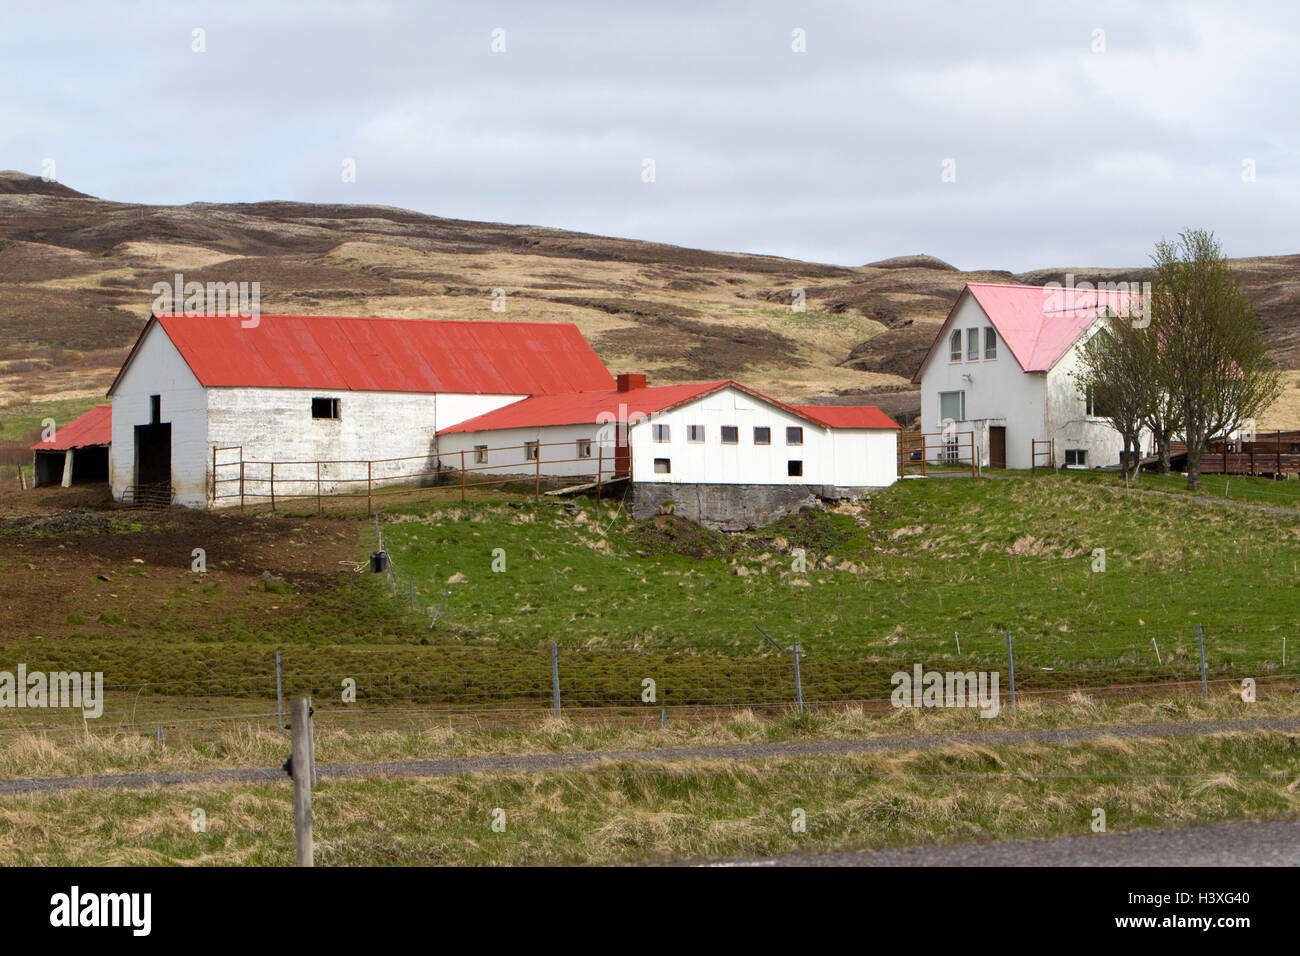 Piccola fattoria islandese homestead casa colonica con fienile dal tetto rosso Islanda Foto Stock